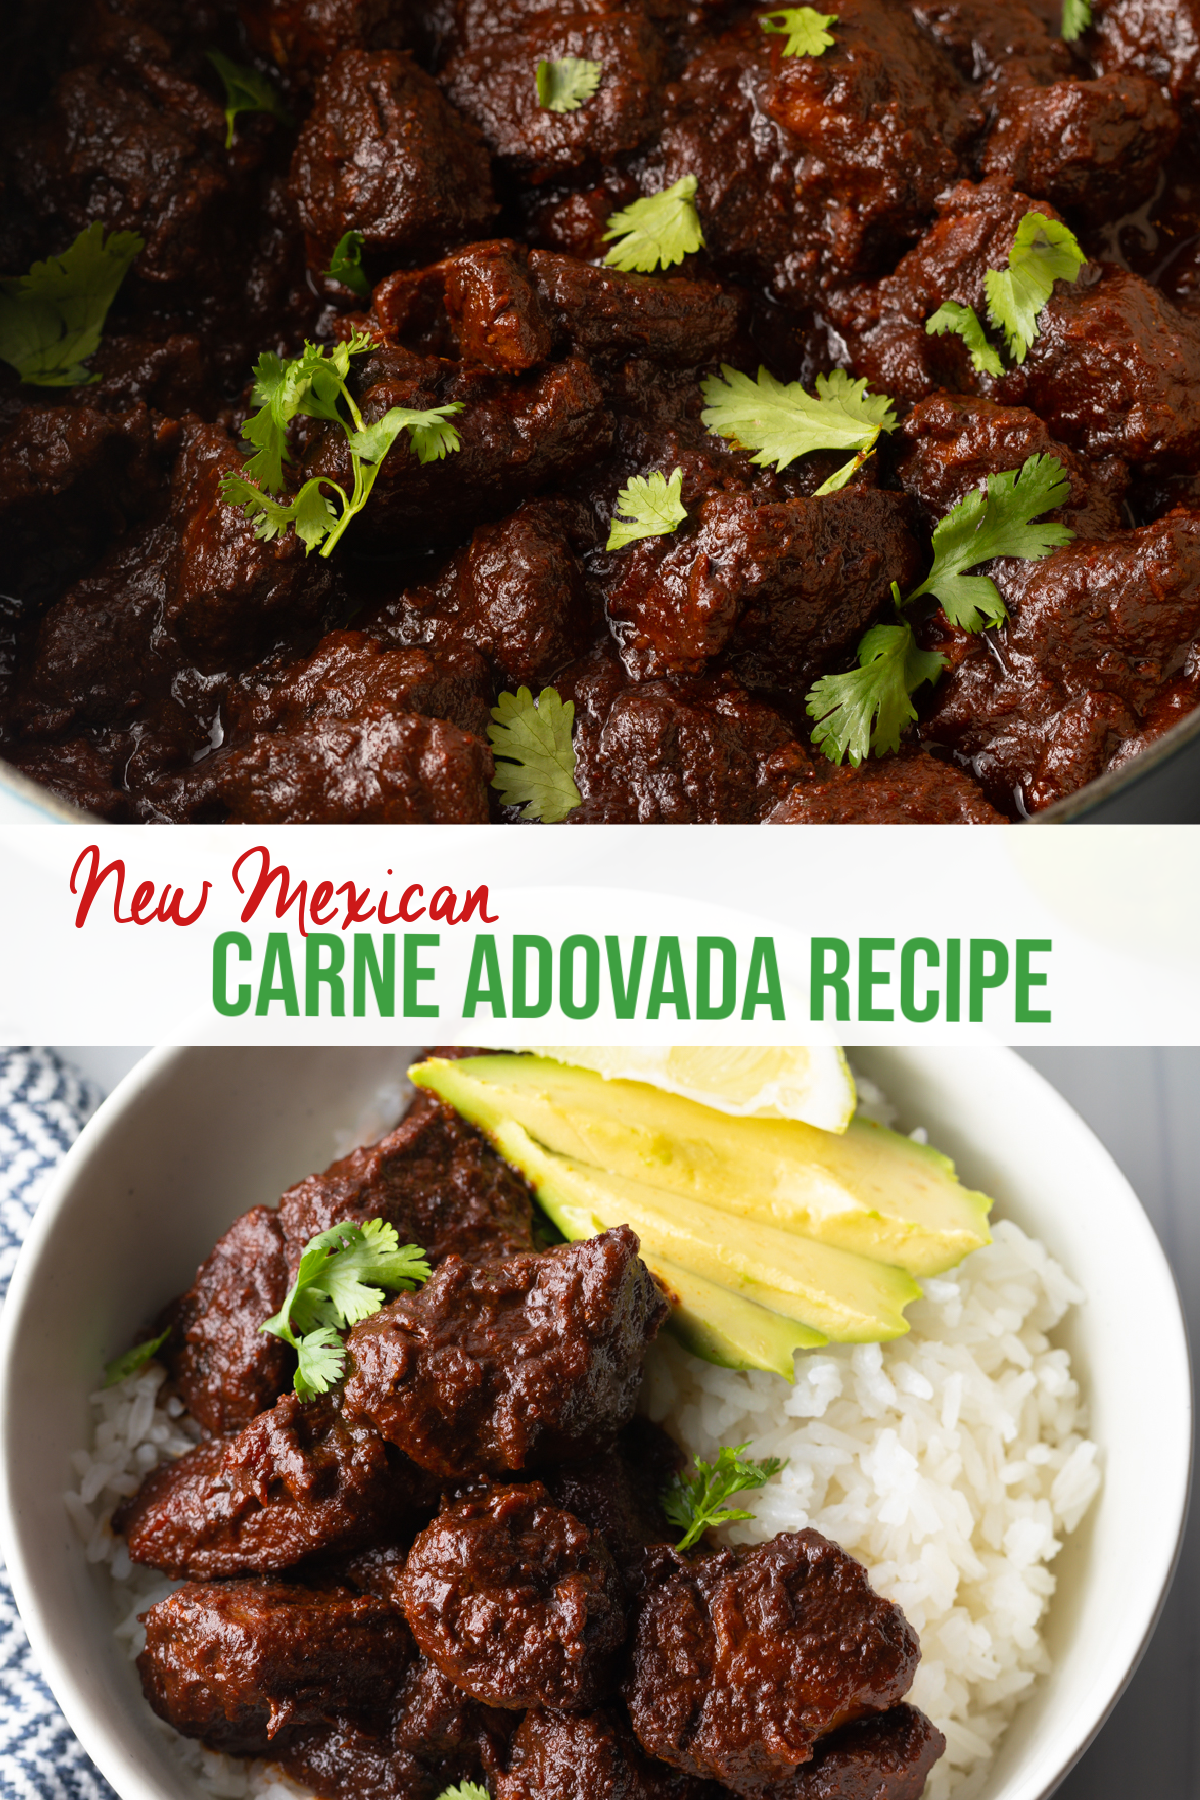 New Mexican carne adovada recipe